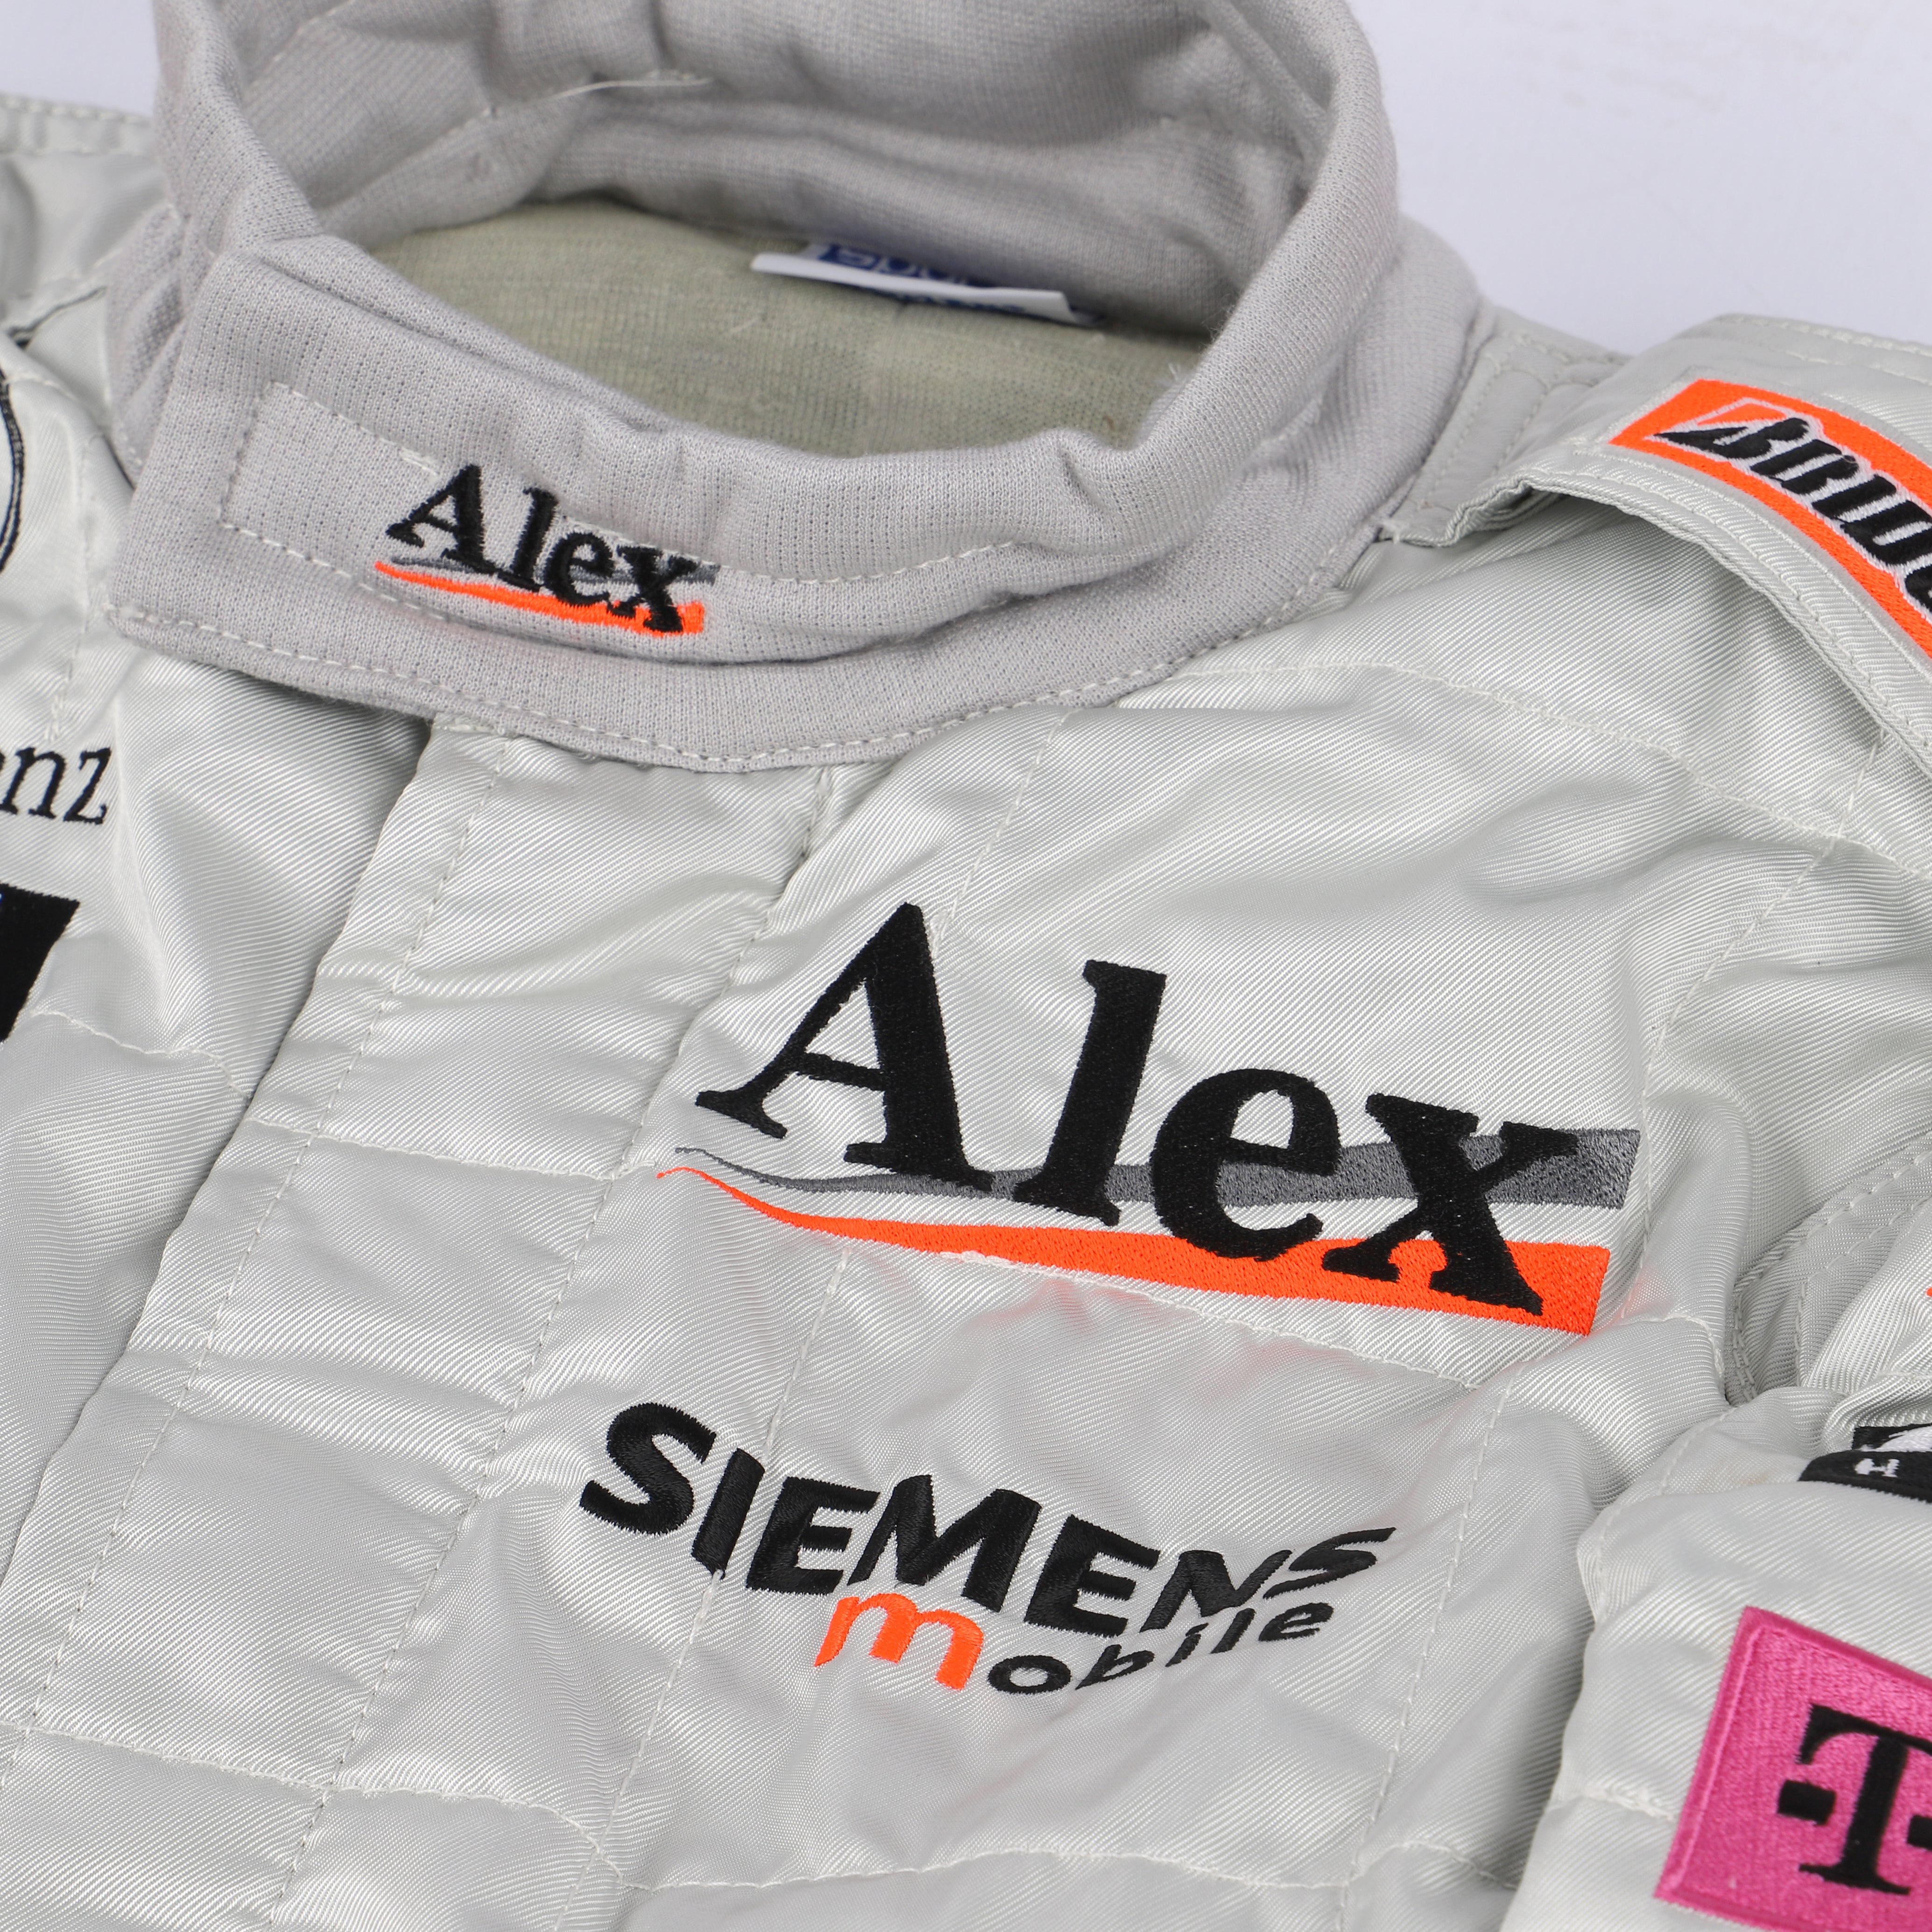 Alexander Wurz 2001 Replica McLaren F1 Team Race Suit